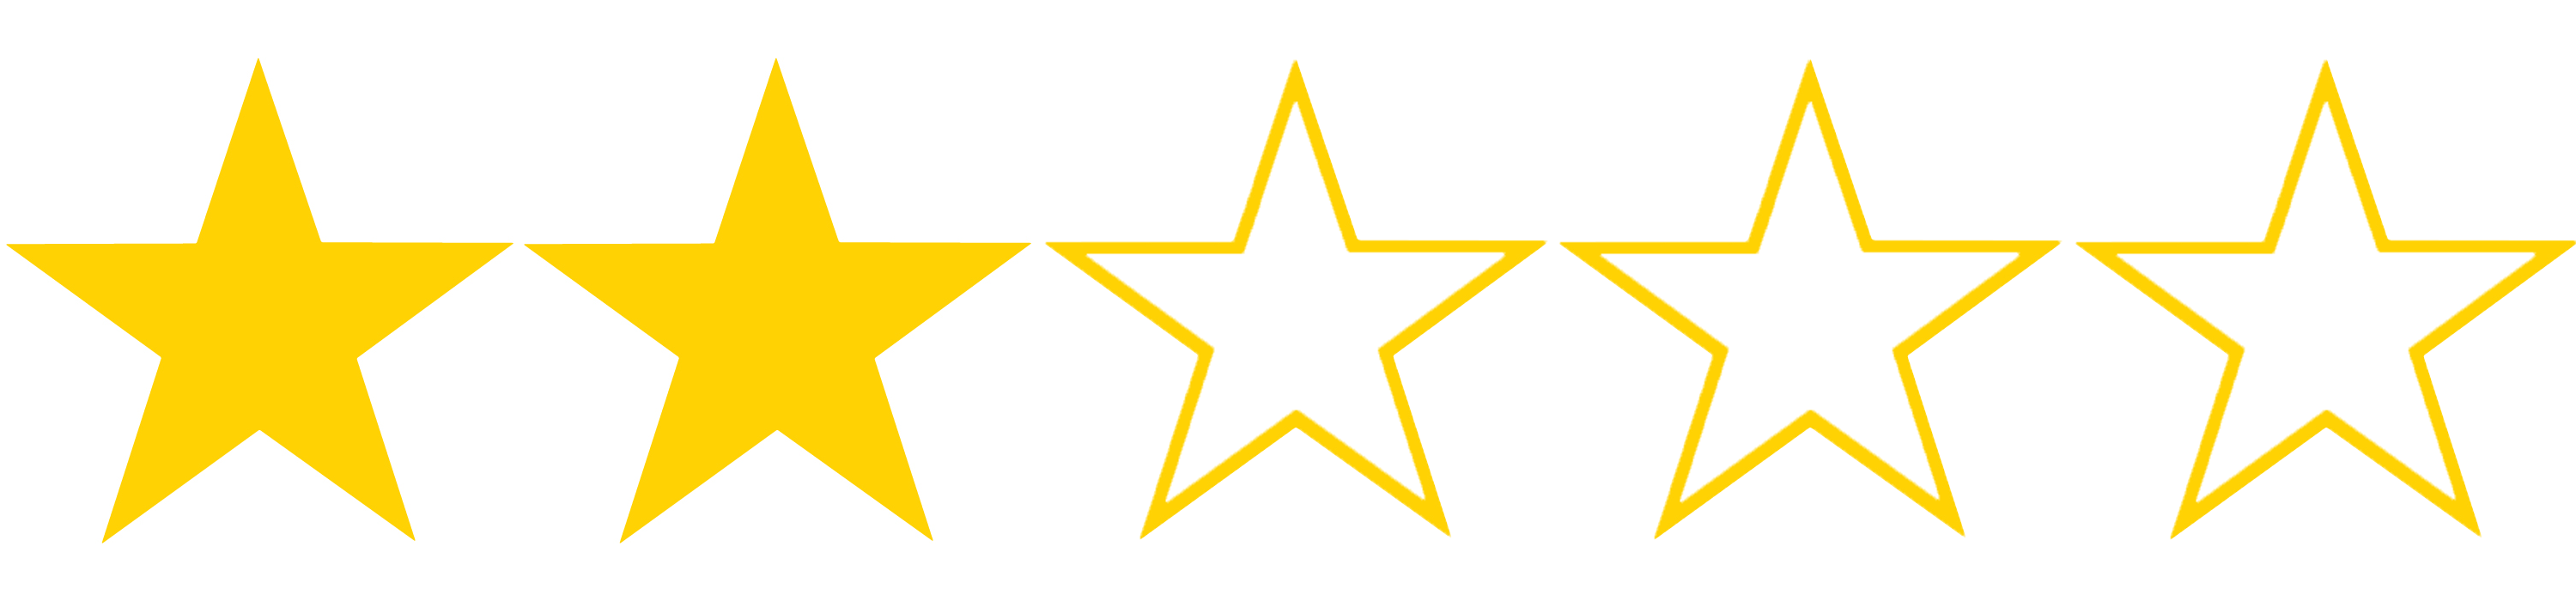 2-star.png (3000Ã—700)